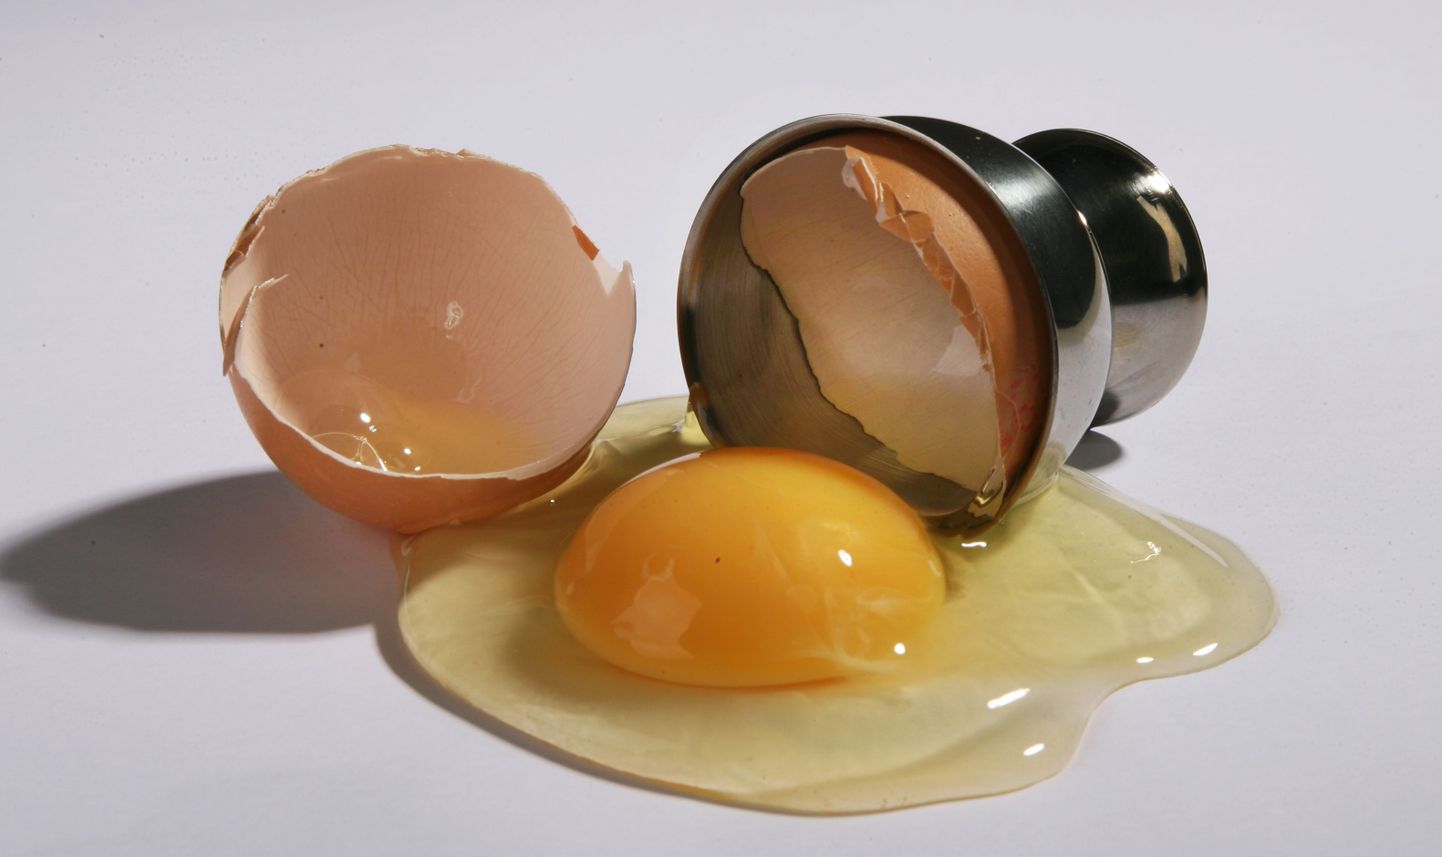 Сырое яйцо. Снимок иллюстративный.